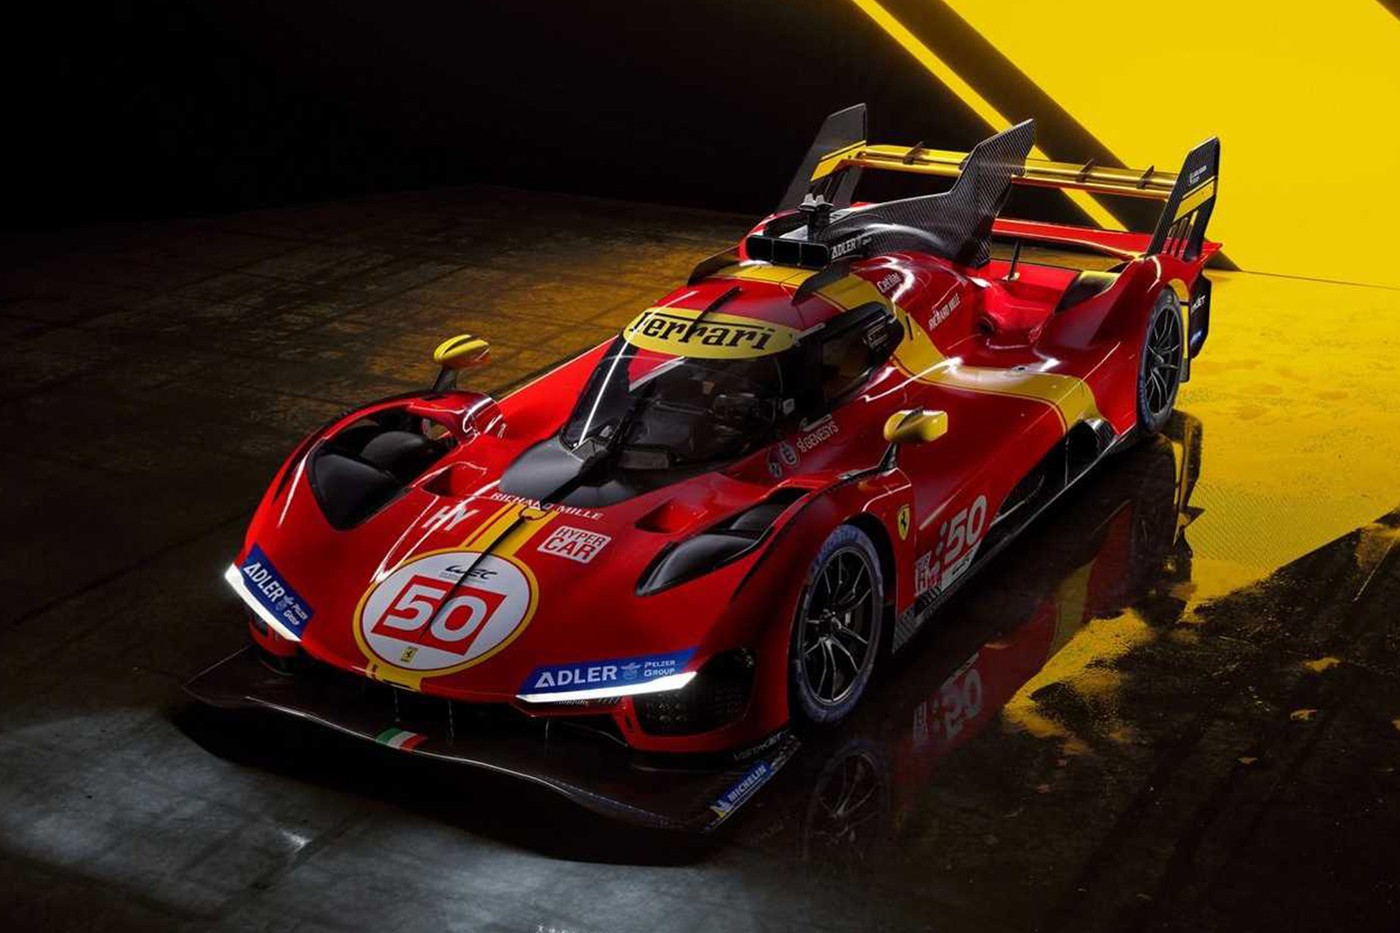 法拉利 Ferrari 正式发表全新耐力赛超跑 499P